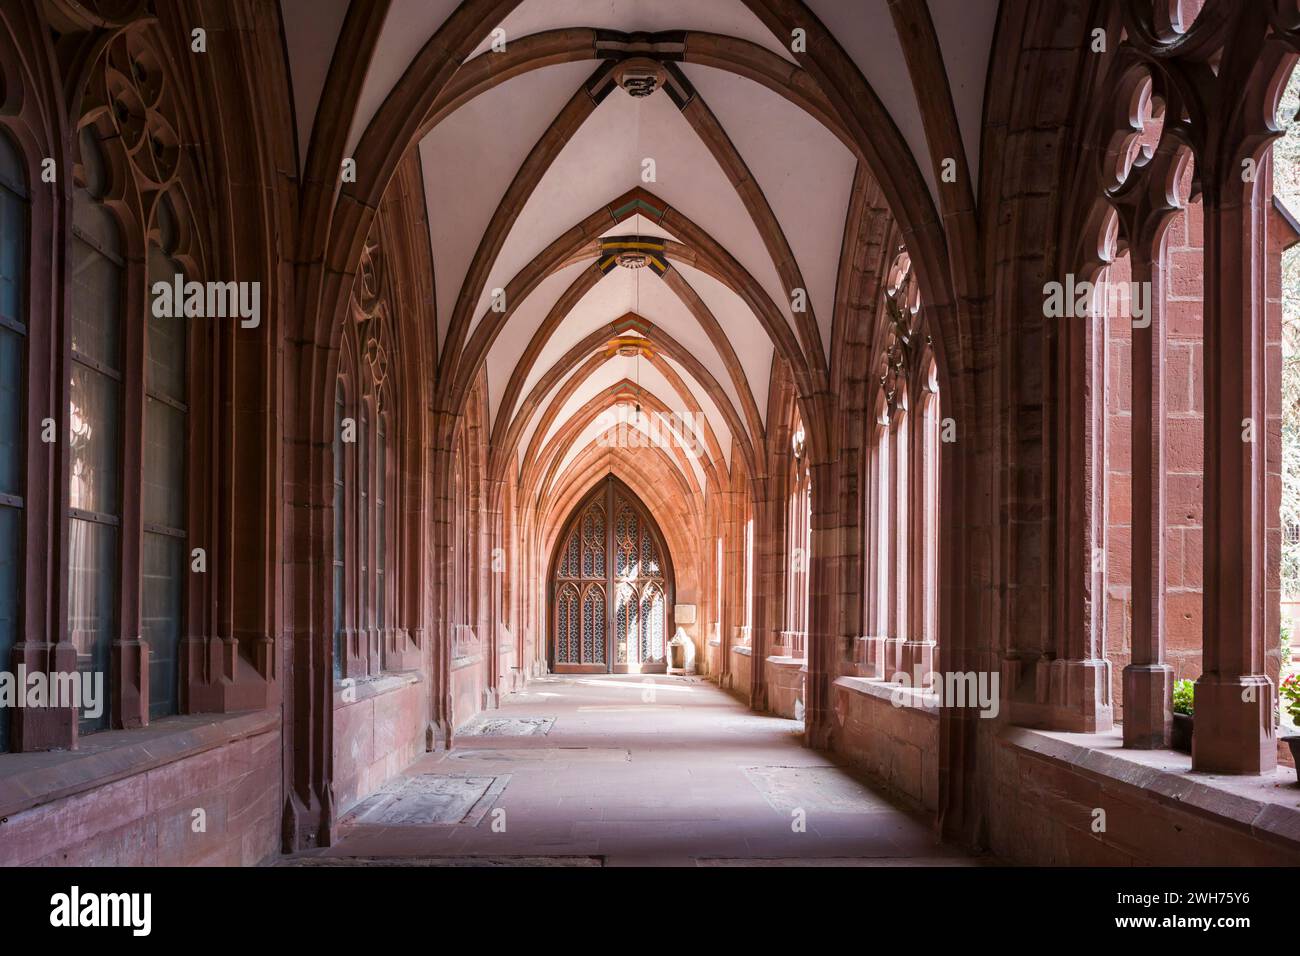 Interno del Chiostro / Kloster della Cattedrale di Magonza / Mainzer Dom, un edificio medievale a volta in pietra rosa locale. Foto Stock